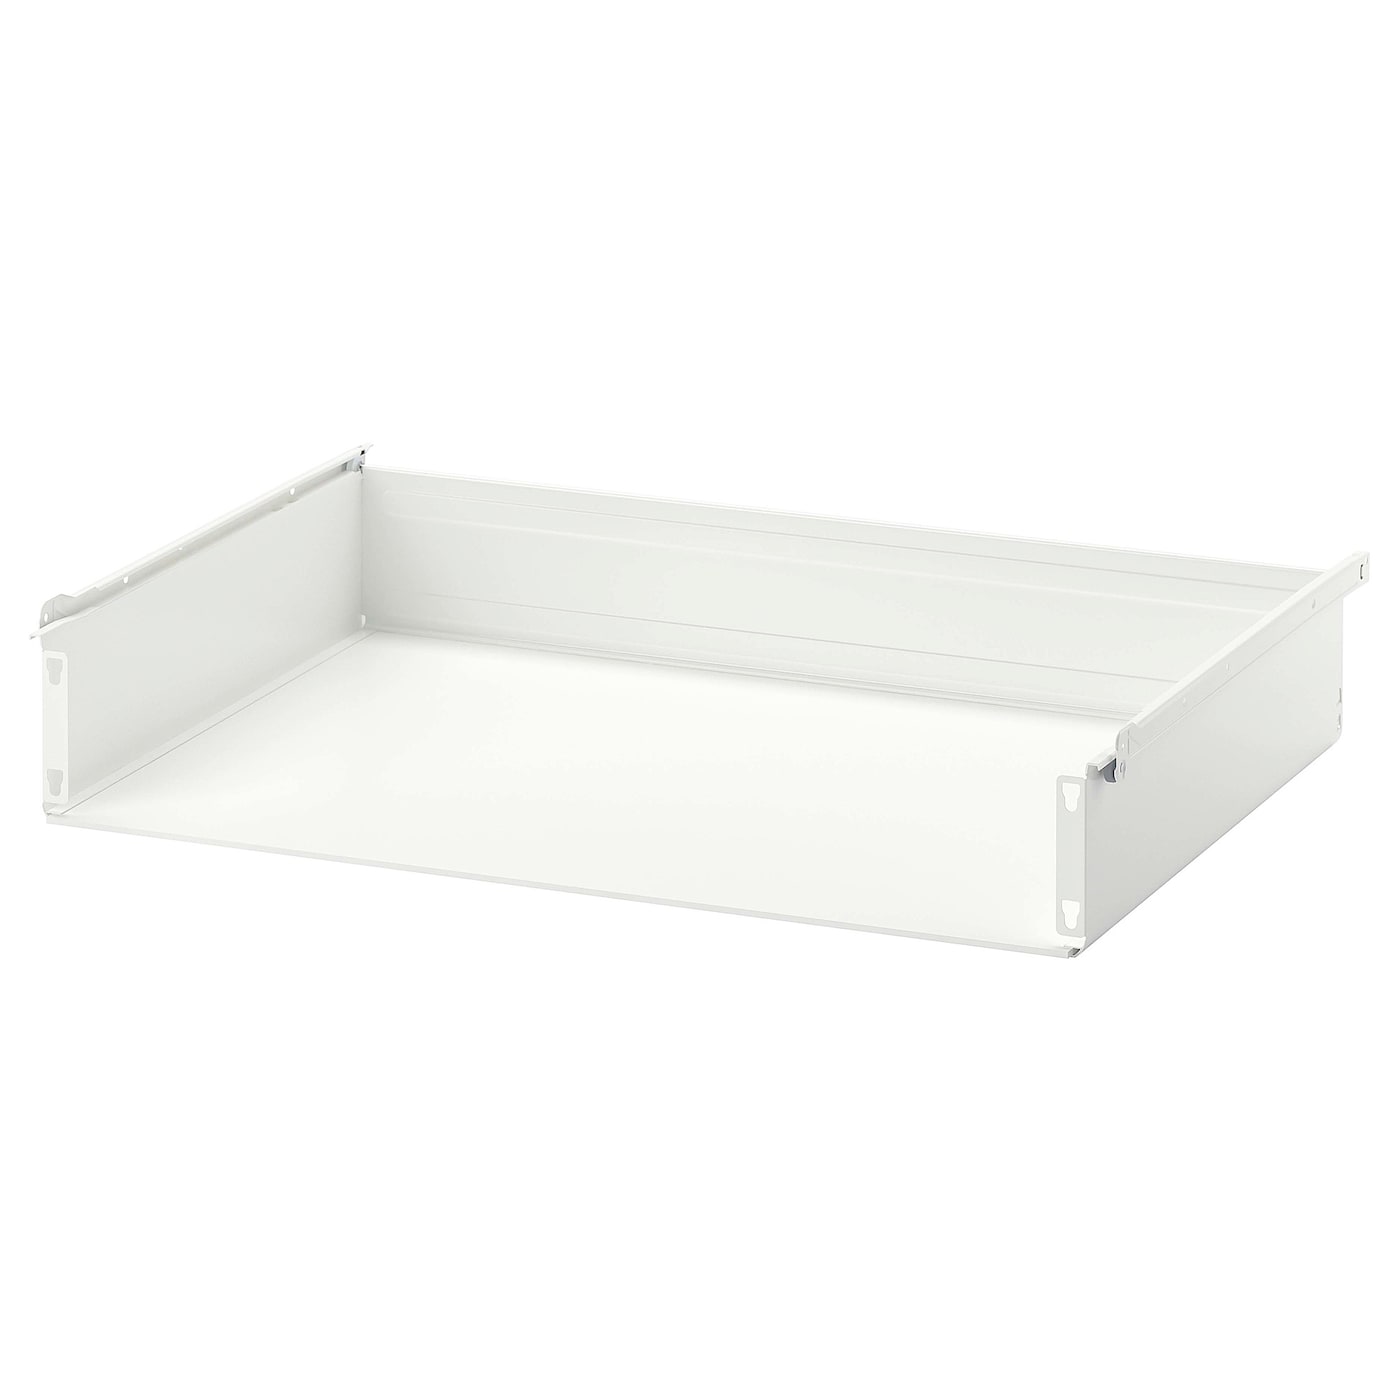 Ящик без фронтальной панели - IKEA HJALPA/HJÄLPA, 80x55 см, белый ХЭЛПА ИКЕА